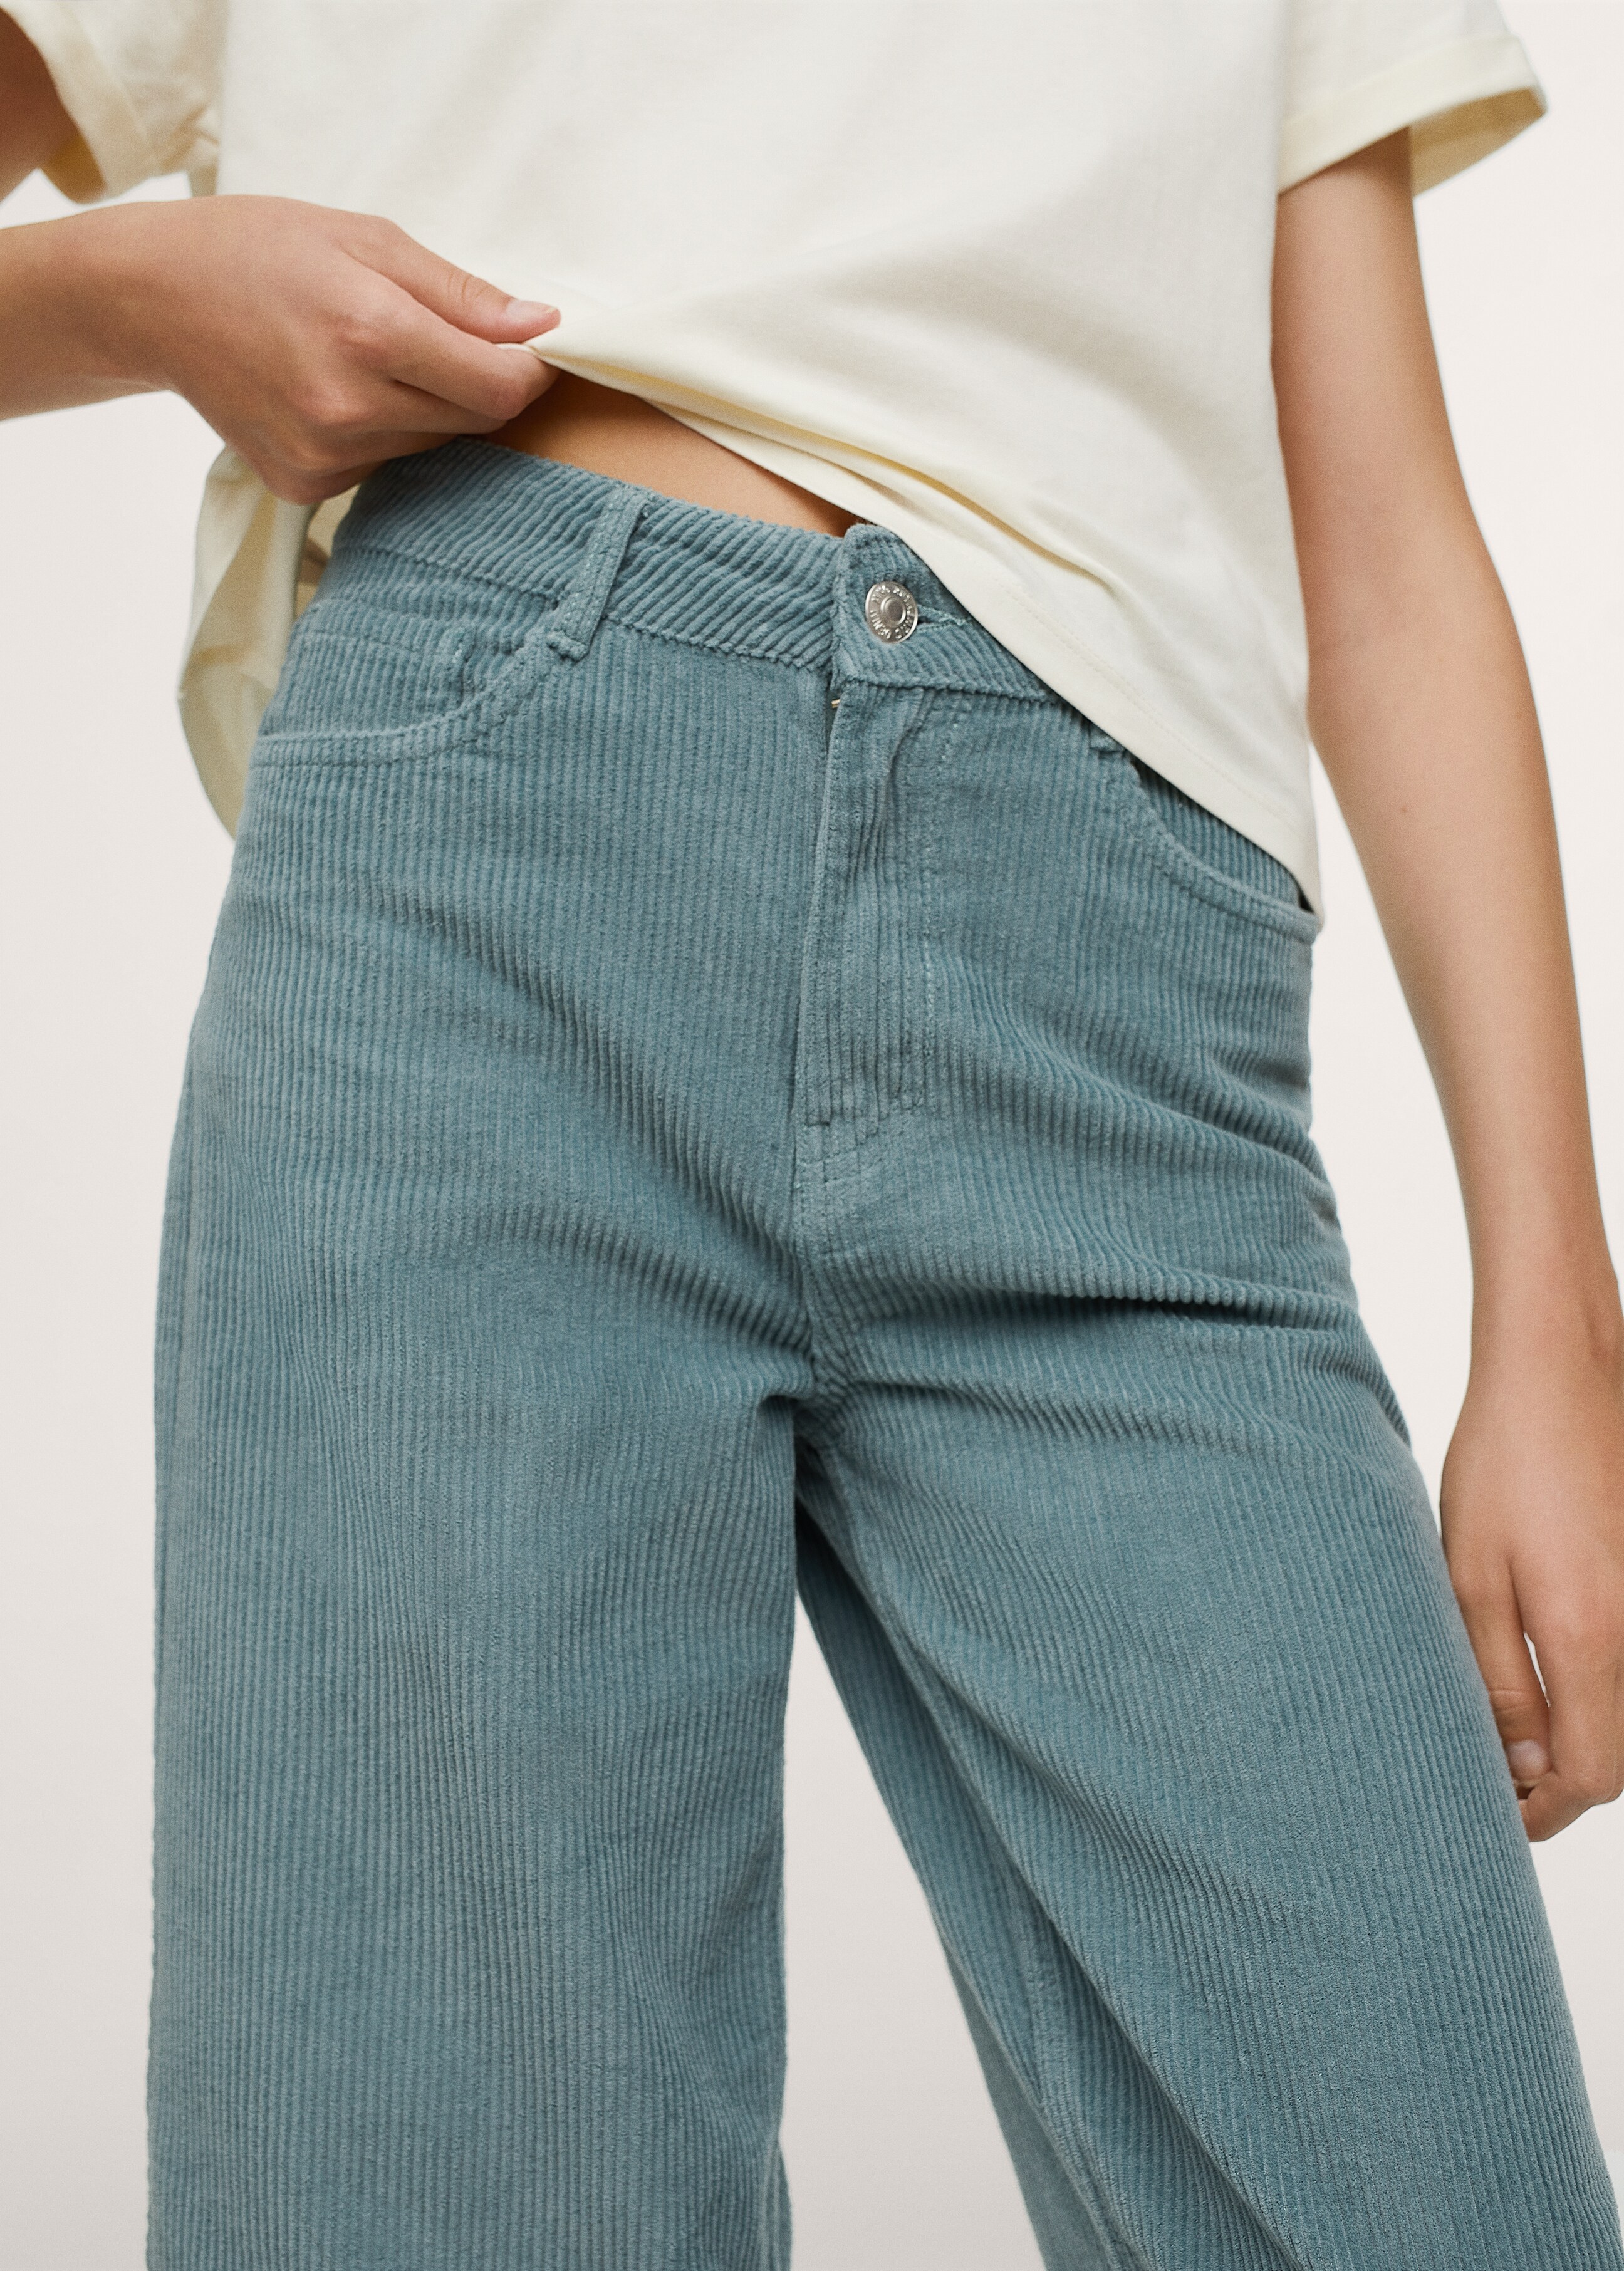 Pantalón pana culotte - Detalle del artículo 1